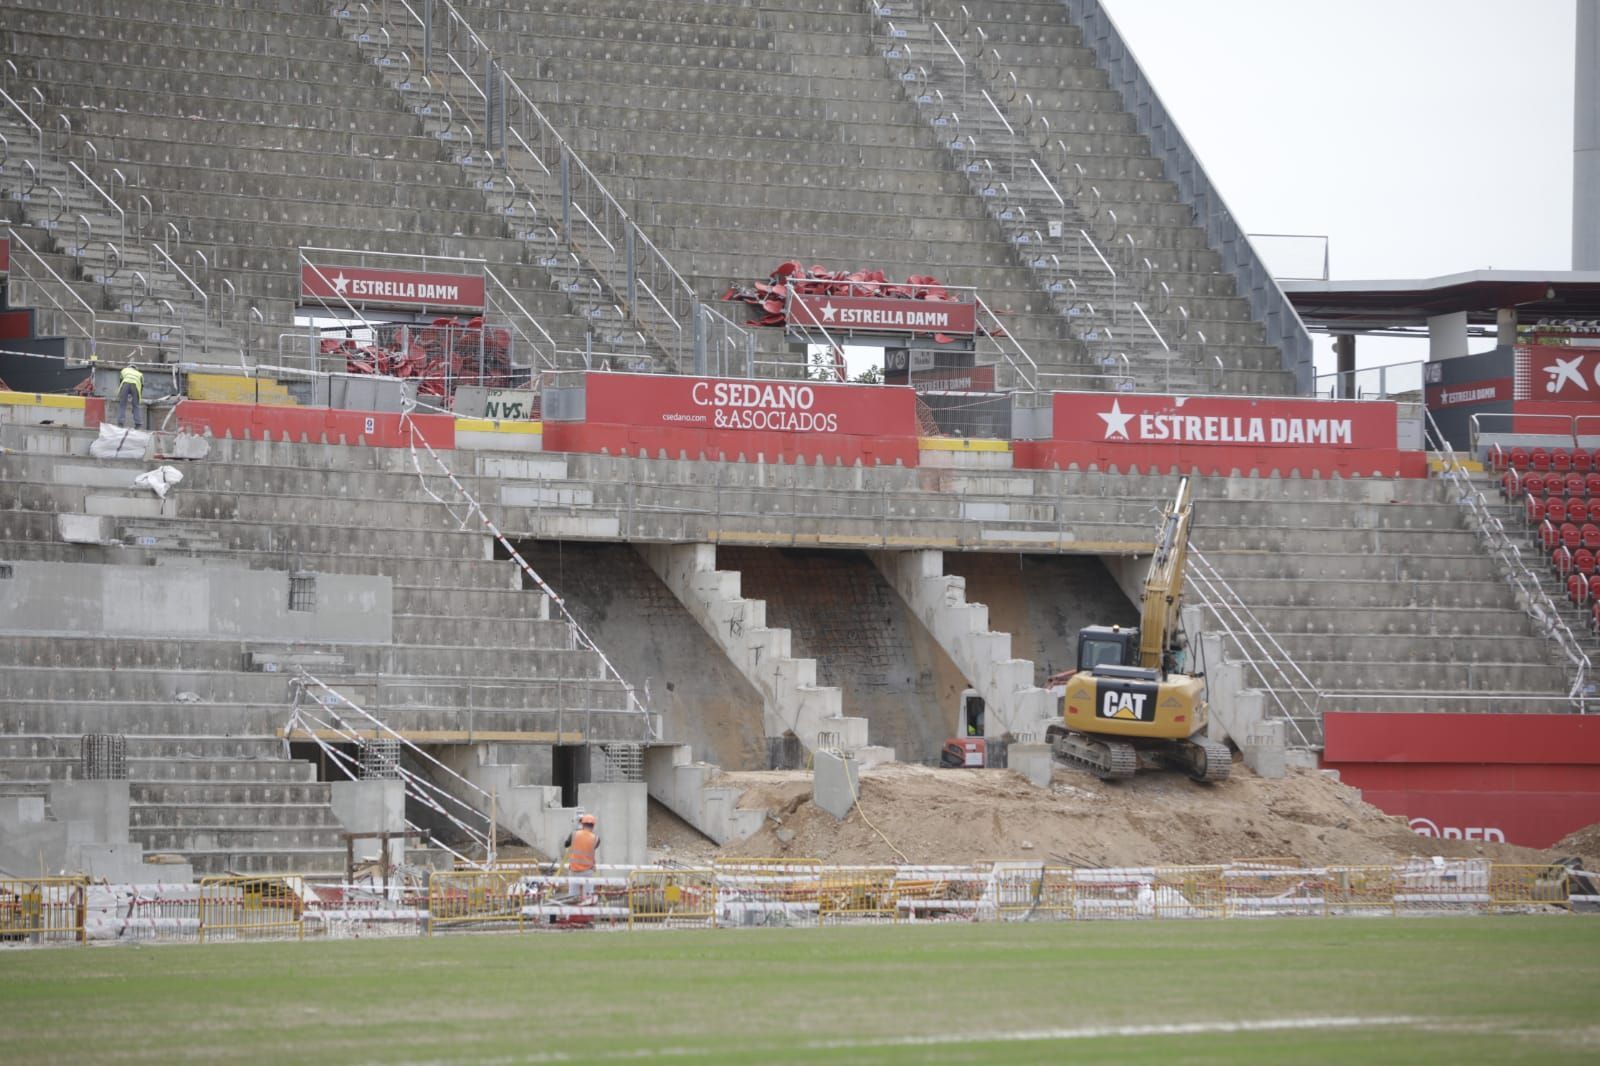 Umbauarbeiten in Son Moix - hier entsteht das neue Stadion von Real Mallorca